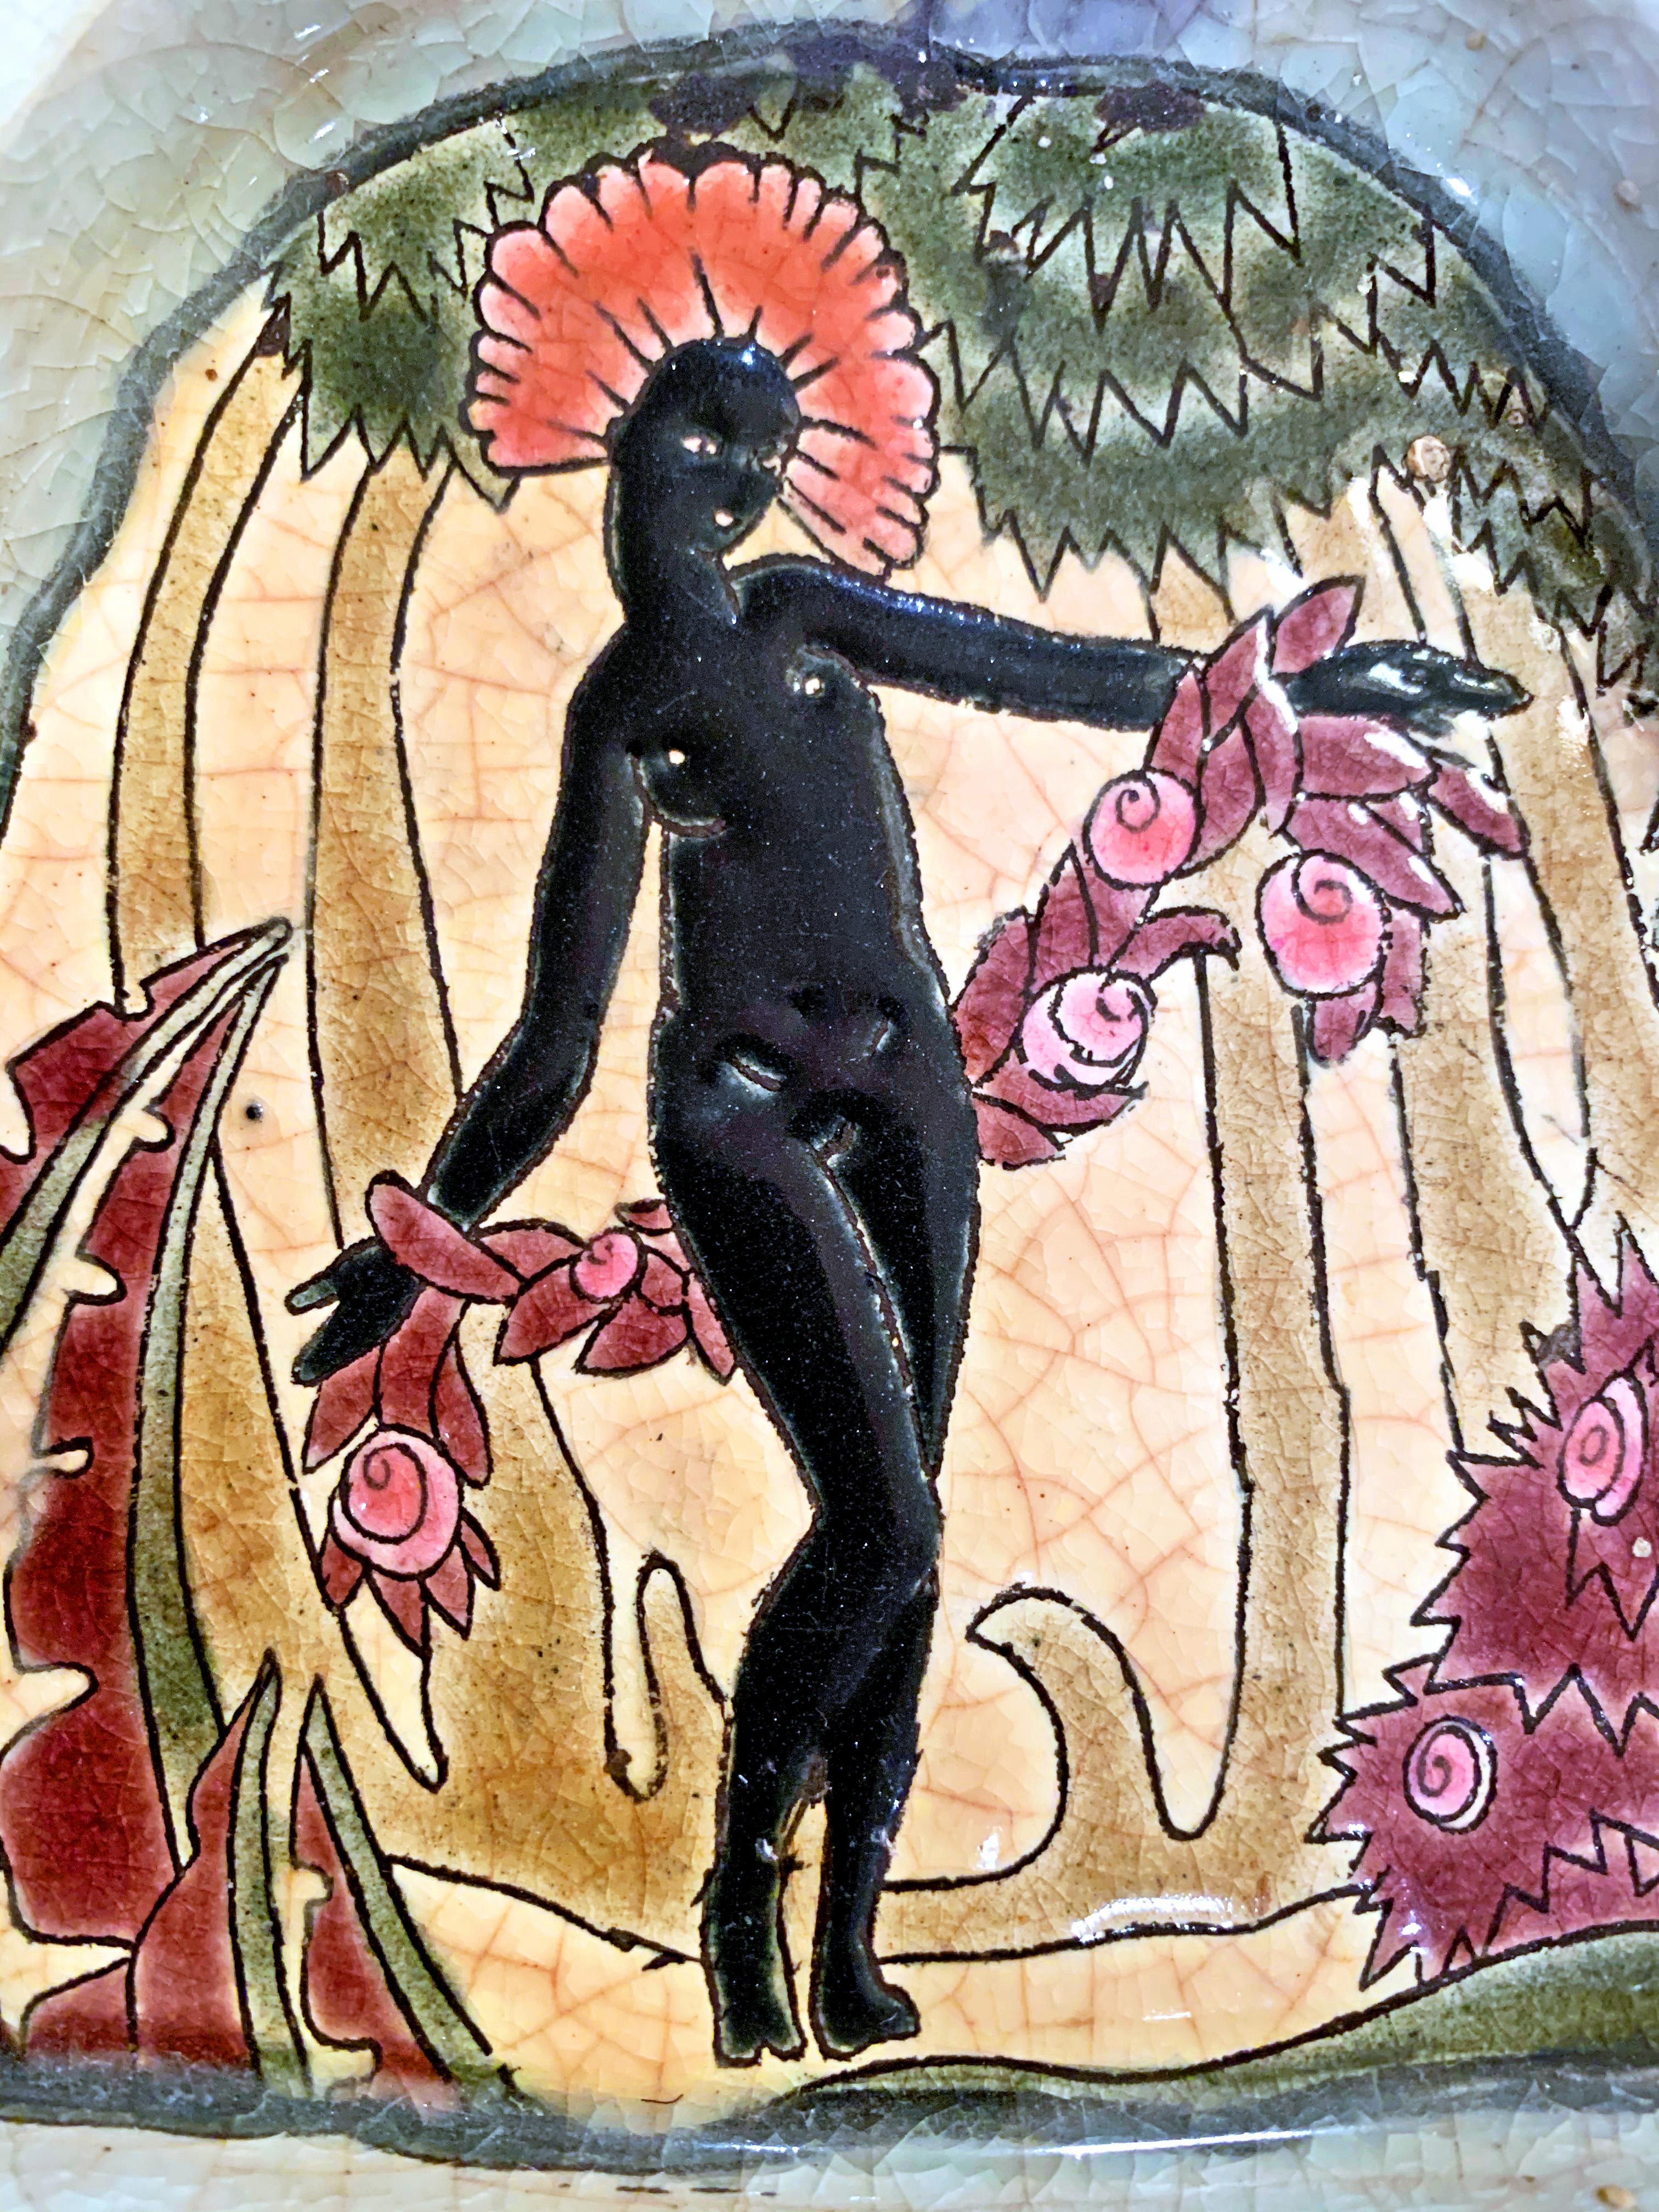 Brillantemente smaltato nei toni del corallo, del nero, del prugna e del muschio, questo rarissimo vassoio da toilette raffigura una figura femminile africana con un copricapo piumato e ghirlande di fiori, in un ambiente tropicale incorniciato da